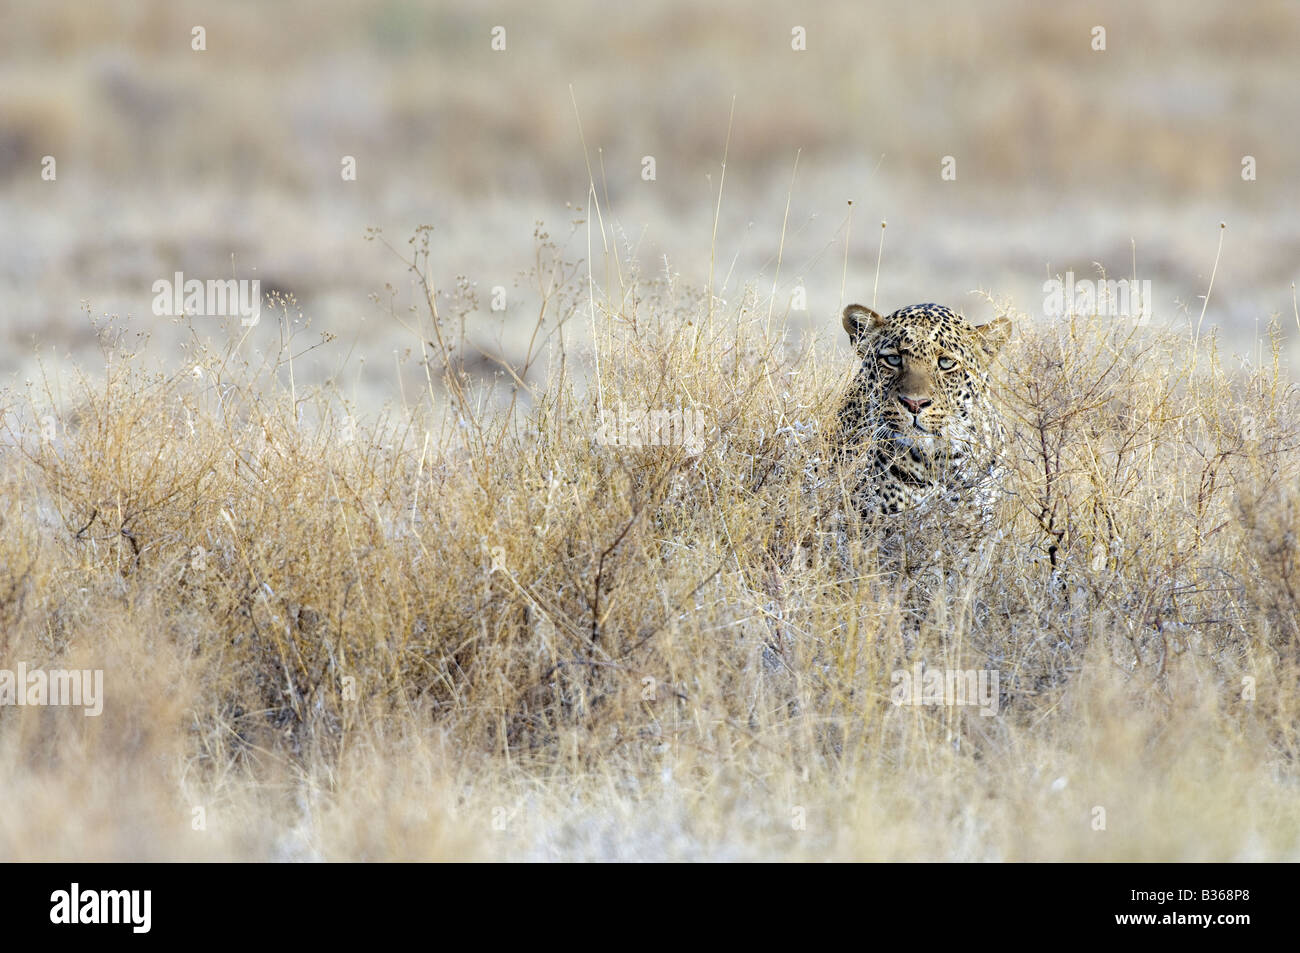 African Leopard, male, sitting well camouflaged in dry grass (Panthera pardus), Ndutu, Ngorongoro, Tanzania Stock Photo